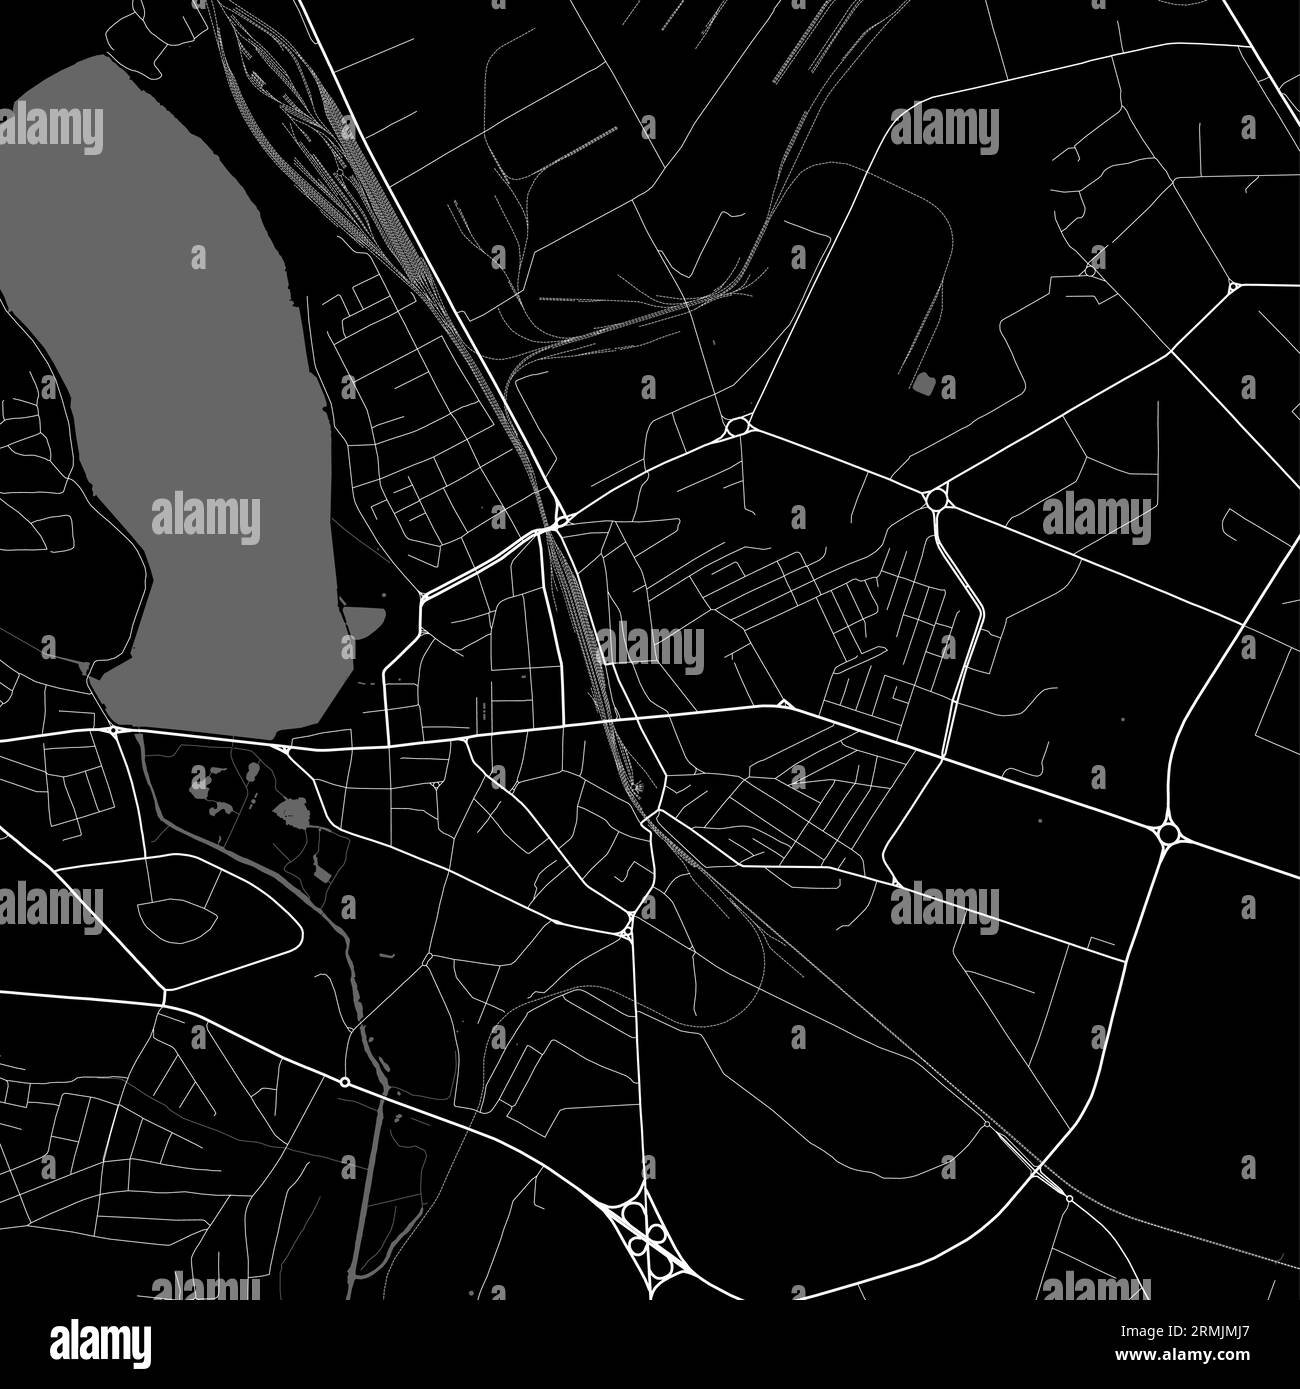 Mappa della città di Ternopil, oblast center dell'Ucraina. Mappa amministrativa municipale in bianco e nero con fiumi e strade, parchi e ferrovie. Illus vettoriale Illustrazione Vettoriale